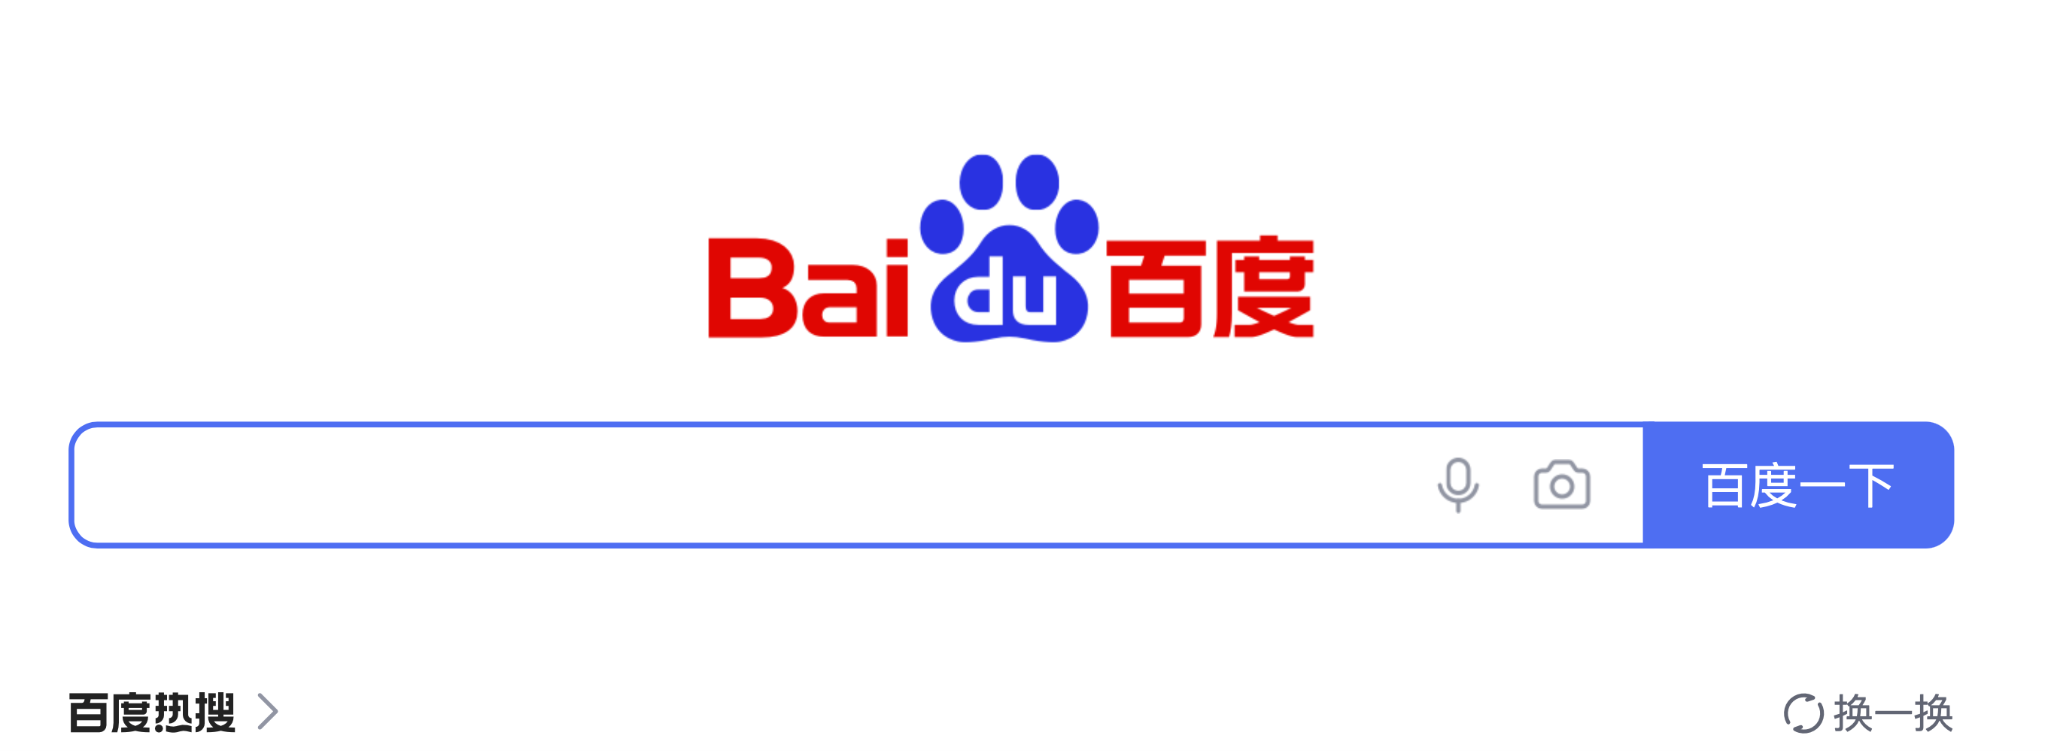 Самый эффективный рекламоноситель в Китае? – надо брать Baidu